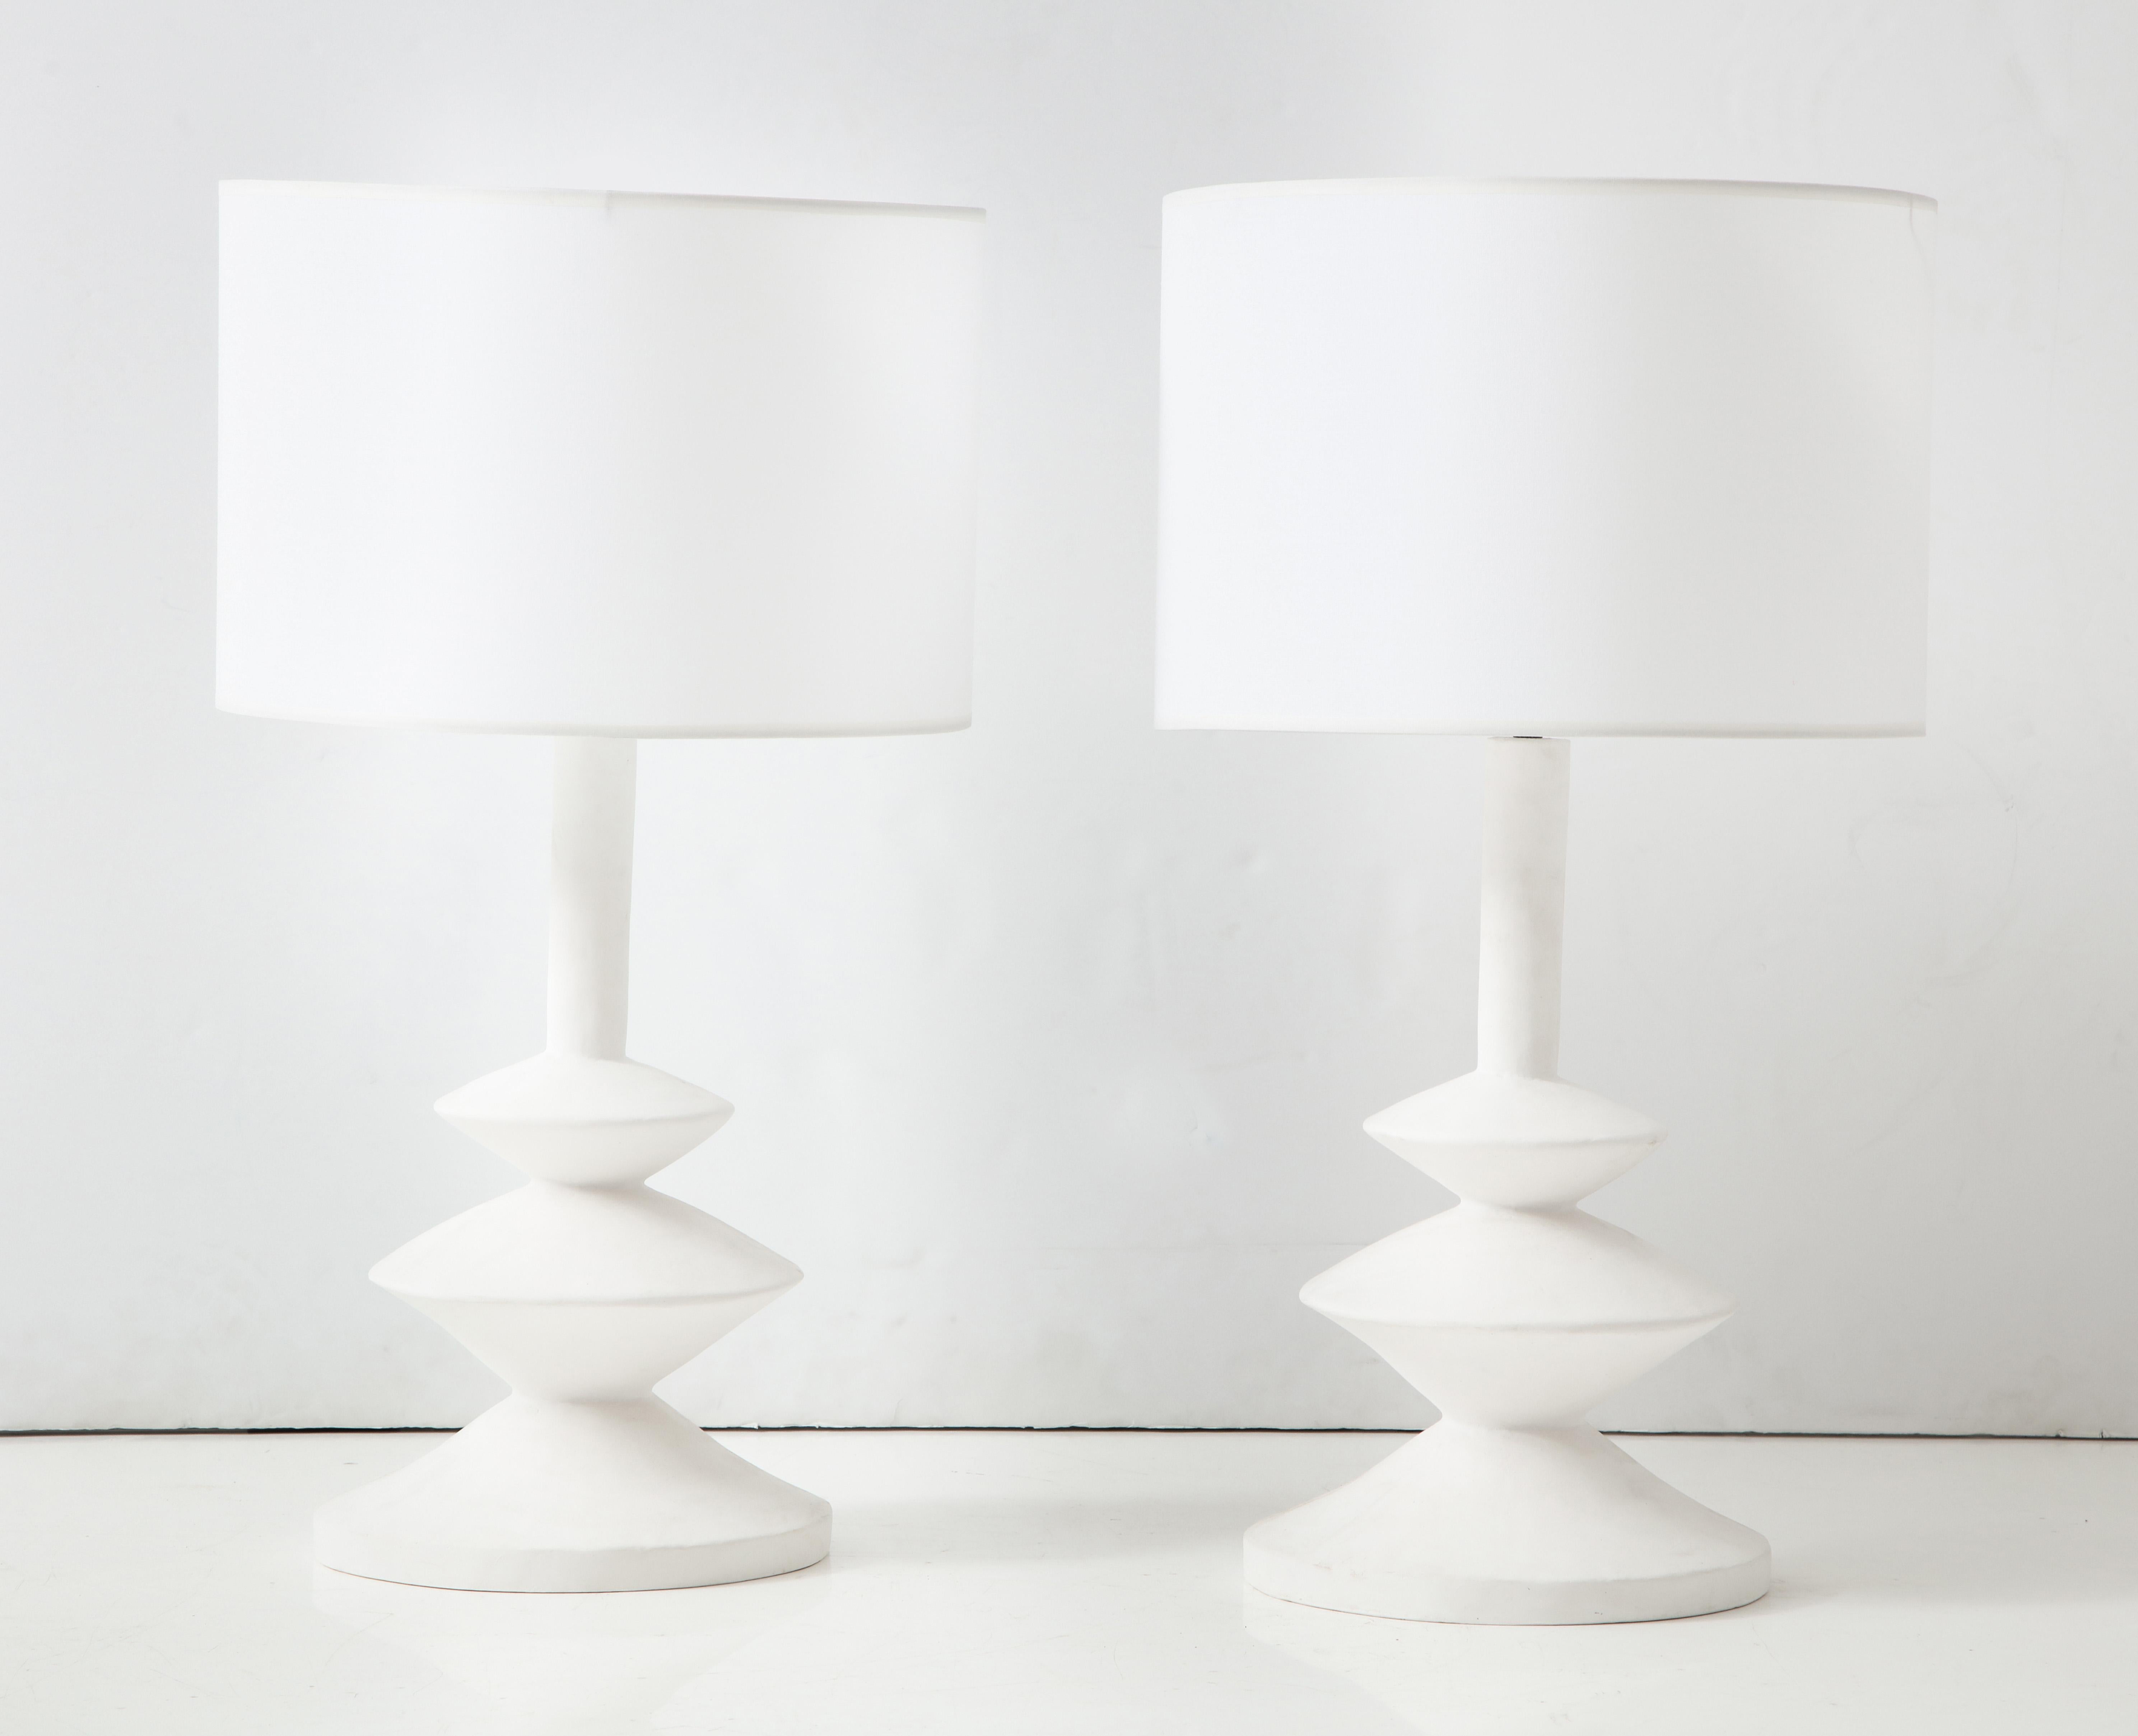 Individuelles Paar französischer Gipslampen in der Art von Alberto Giacometti.
Die Lampenschirme sind nicht im Lieferumfang enthalten. Ein Paar ist derzeit verfügbar.
Die Vorlaufzeit für Sonderanfertigungen beträgt 8-10 Wochen.